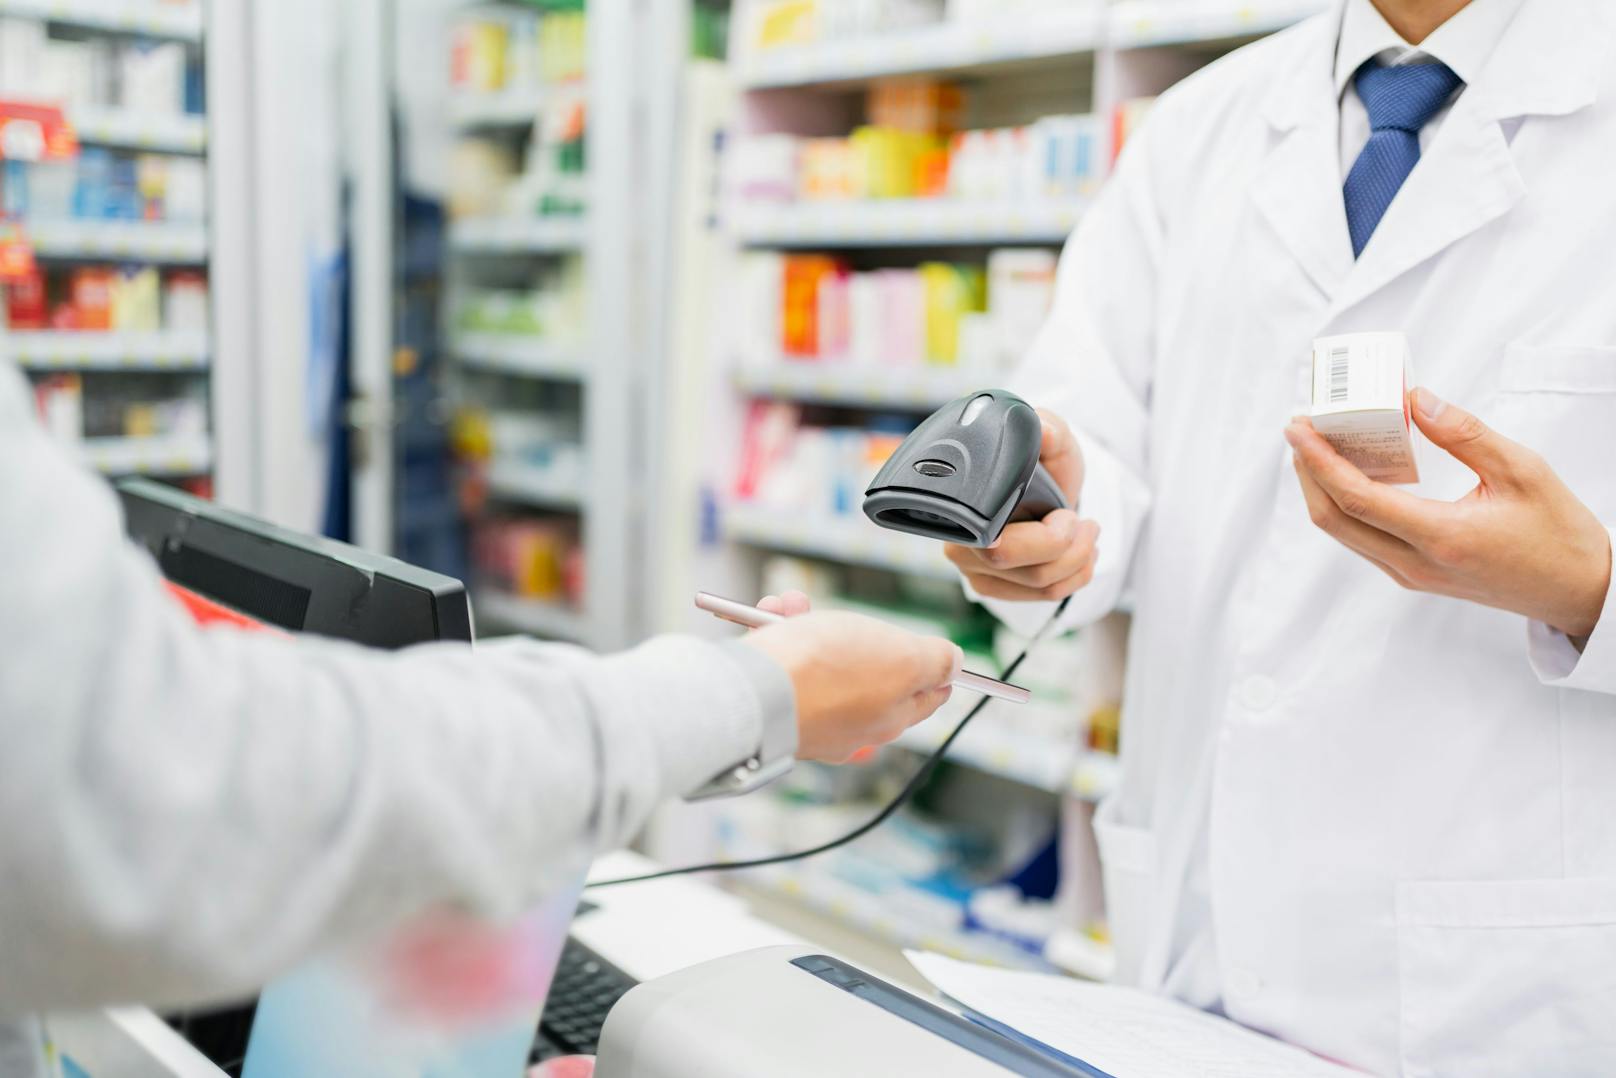 Apotheker schlagen Alarm: "Uns gehen Medikamente aus!"